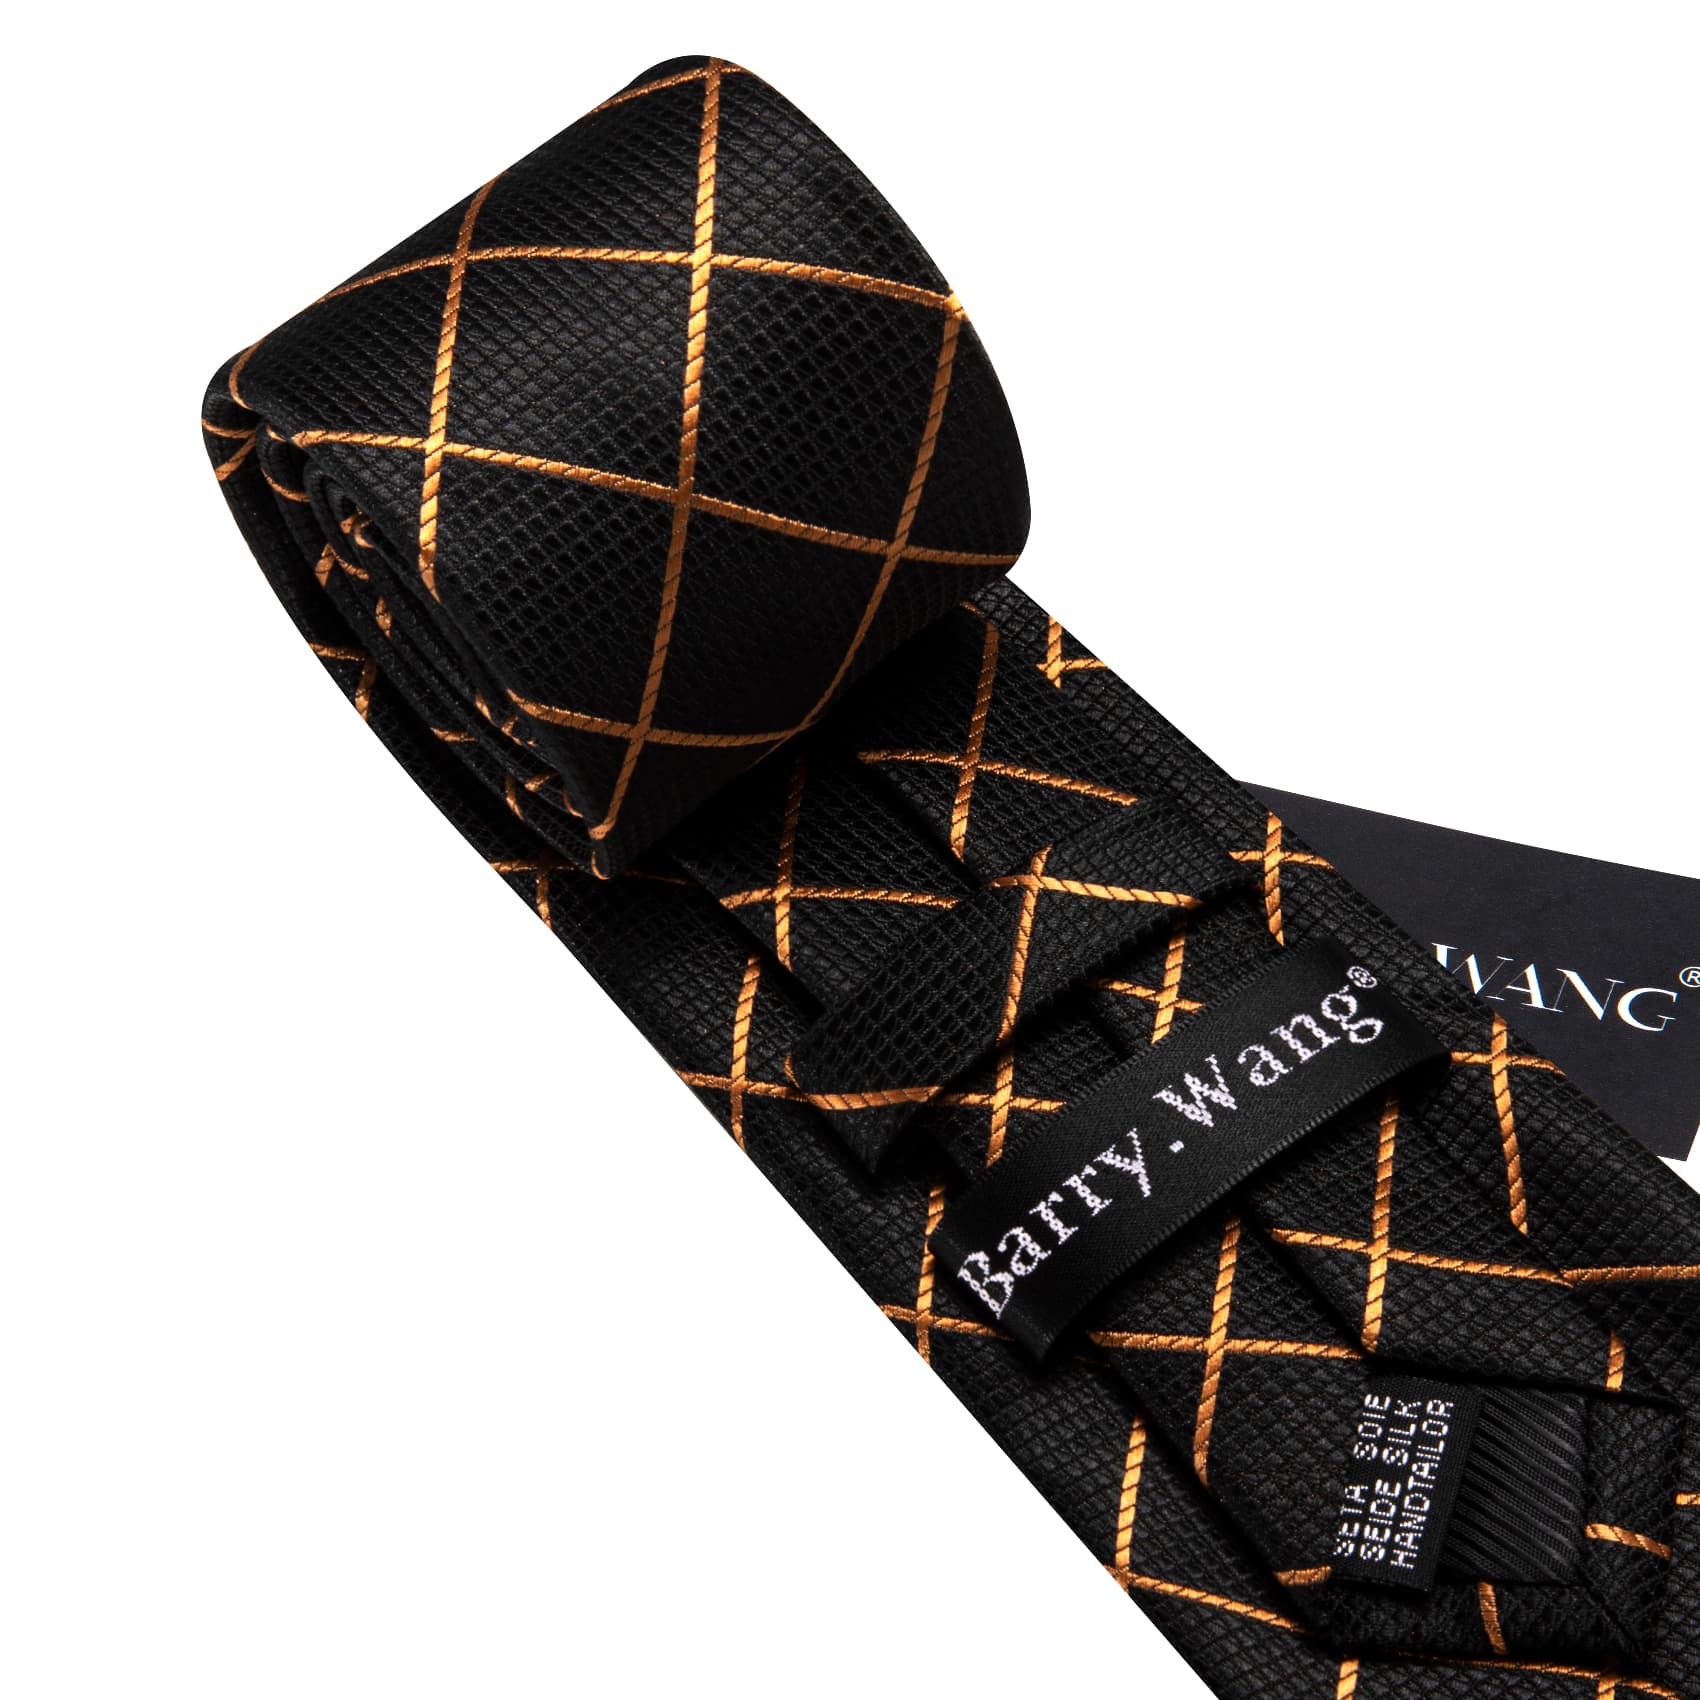 Black Tie Gold Lines Checkered Necktie Hanky Cufflinks Set